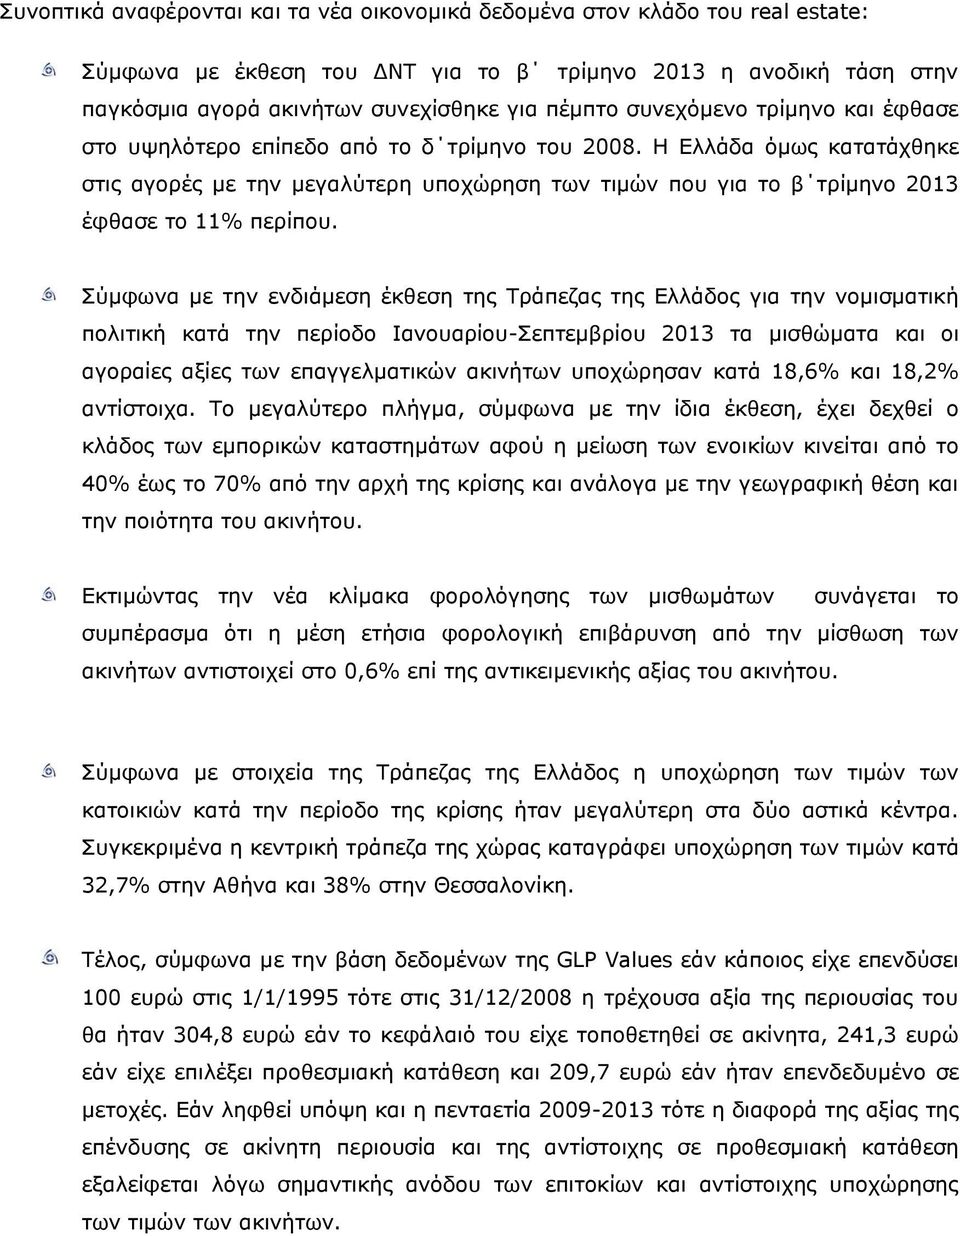 Σύμφωνα με την ενδιάμεση έκθεση της Τράπεζας της Ελλάδος για την νομισματική πολιτική κατά την περίοδο Ιανουαρίου-Σεπτεμβρίου 213 τα μισθώματα και οι αγοραίες αξίες των επαγγελματικών ακινήτων